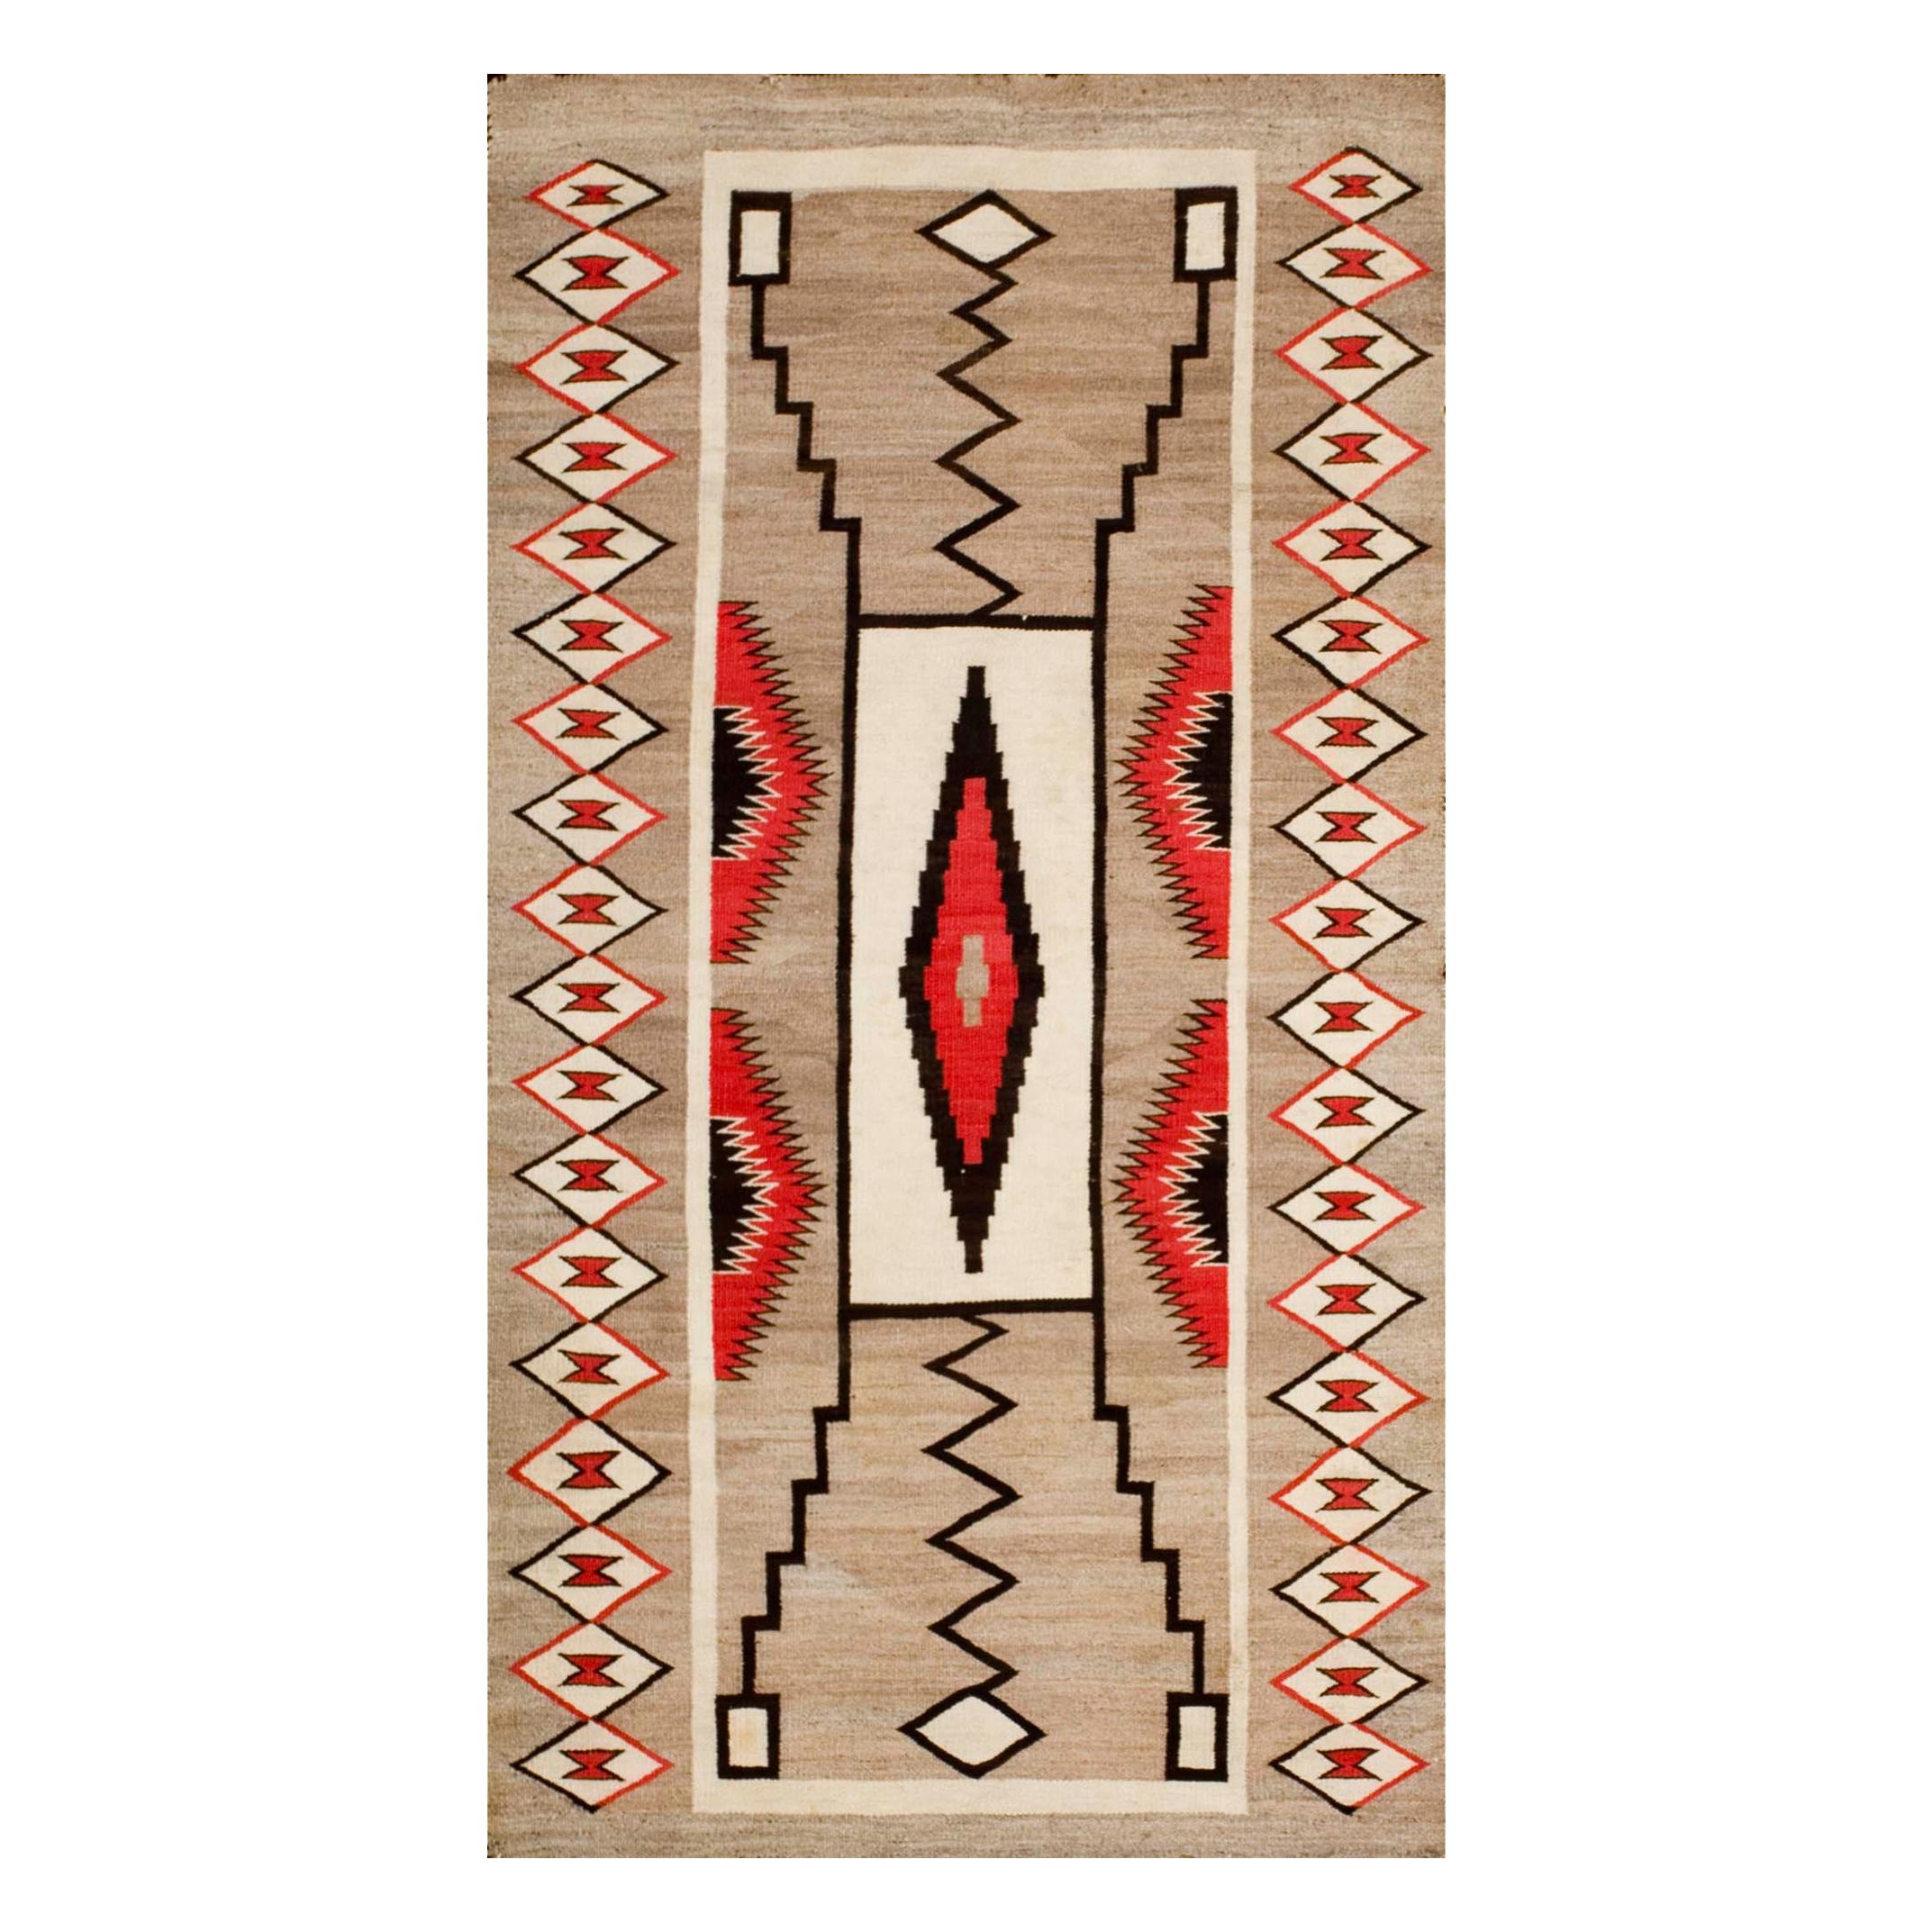 Amerikanischer Navajo-Teppich mit Sturmmuster des frühen 20. Jahrhunderts ( 3' x 5'7" - 91 x 170)